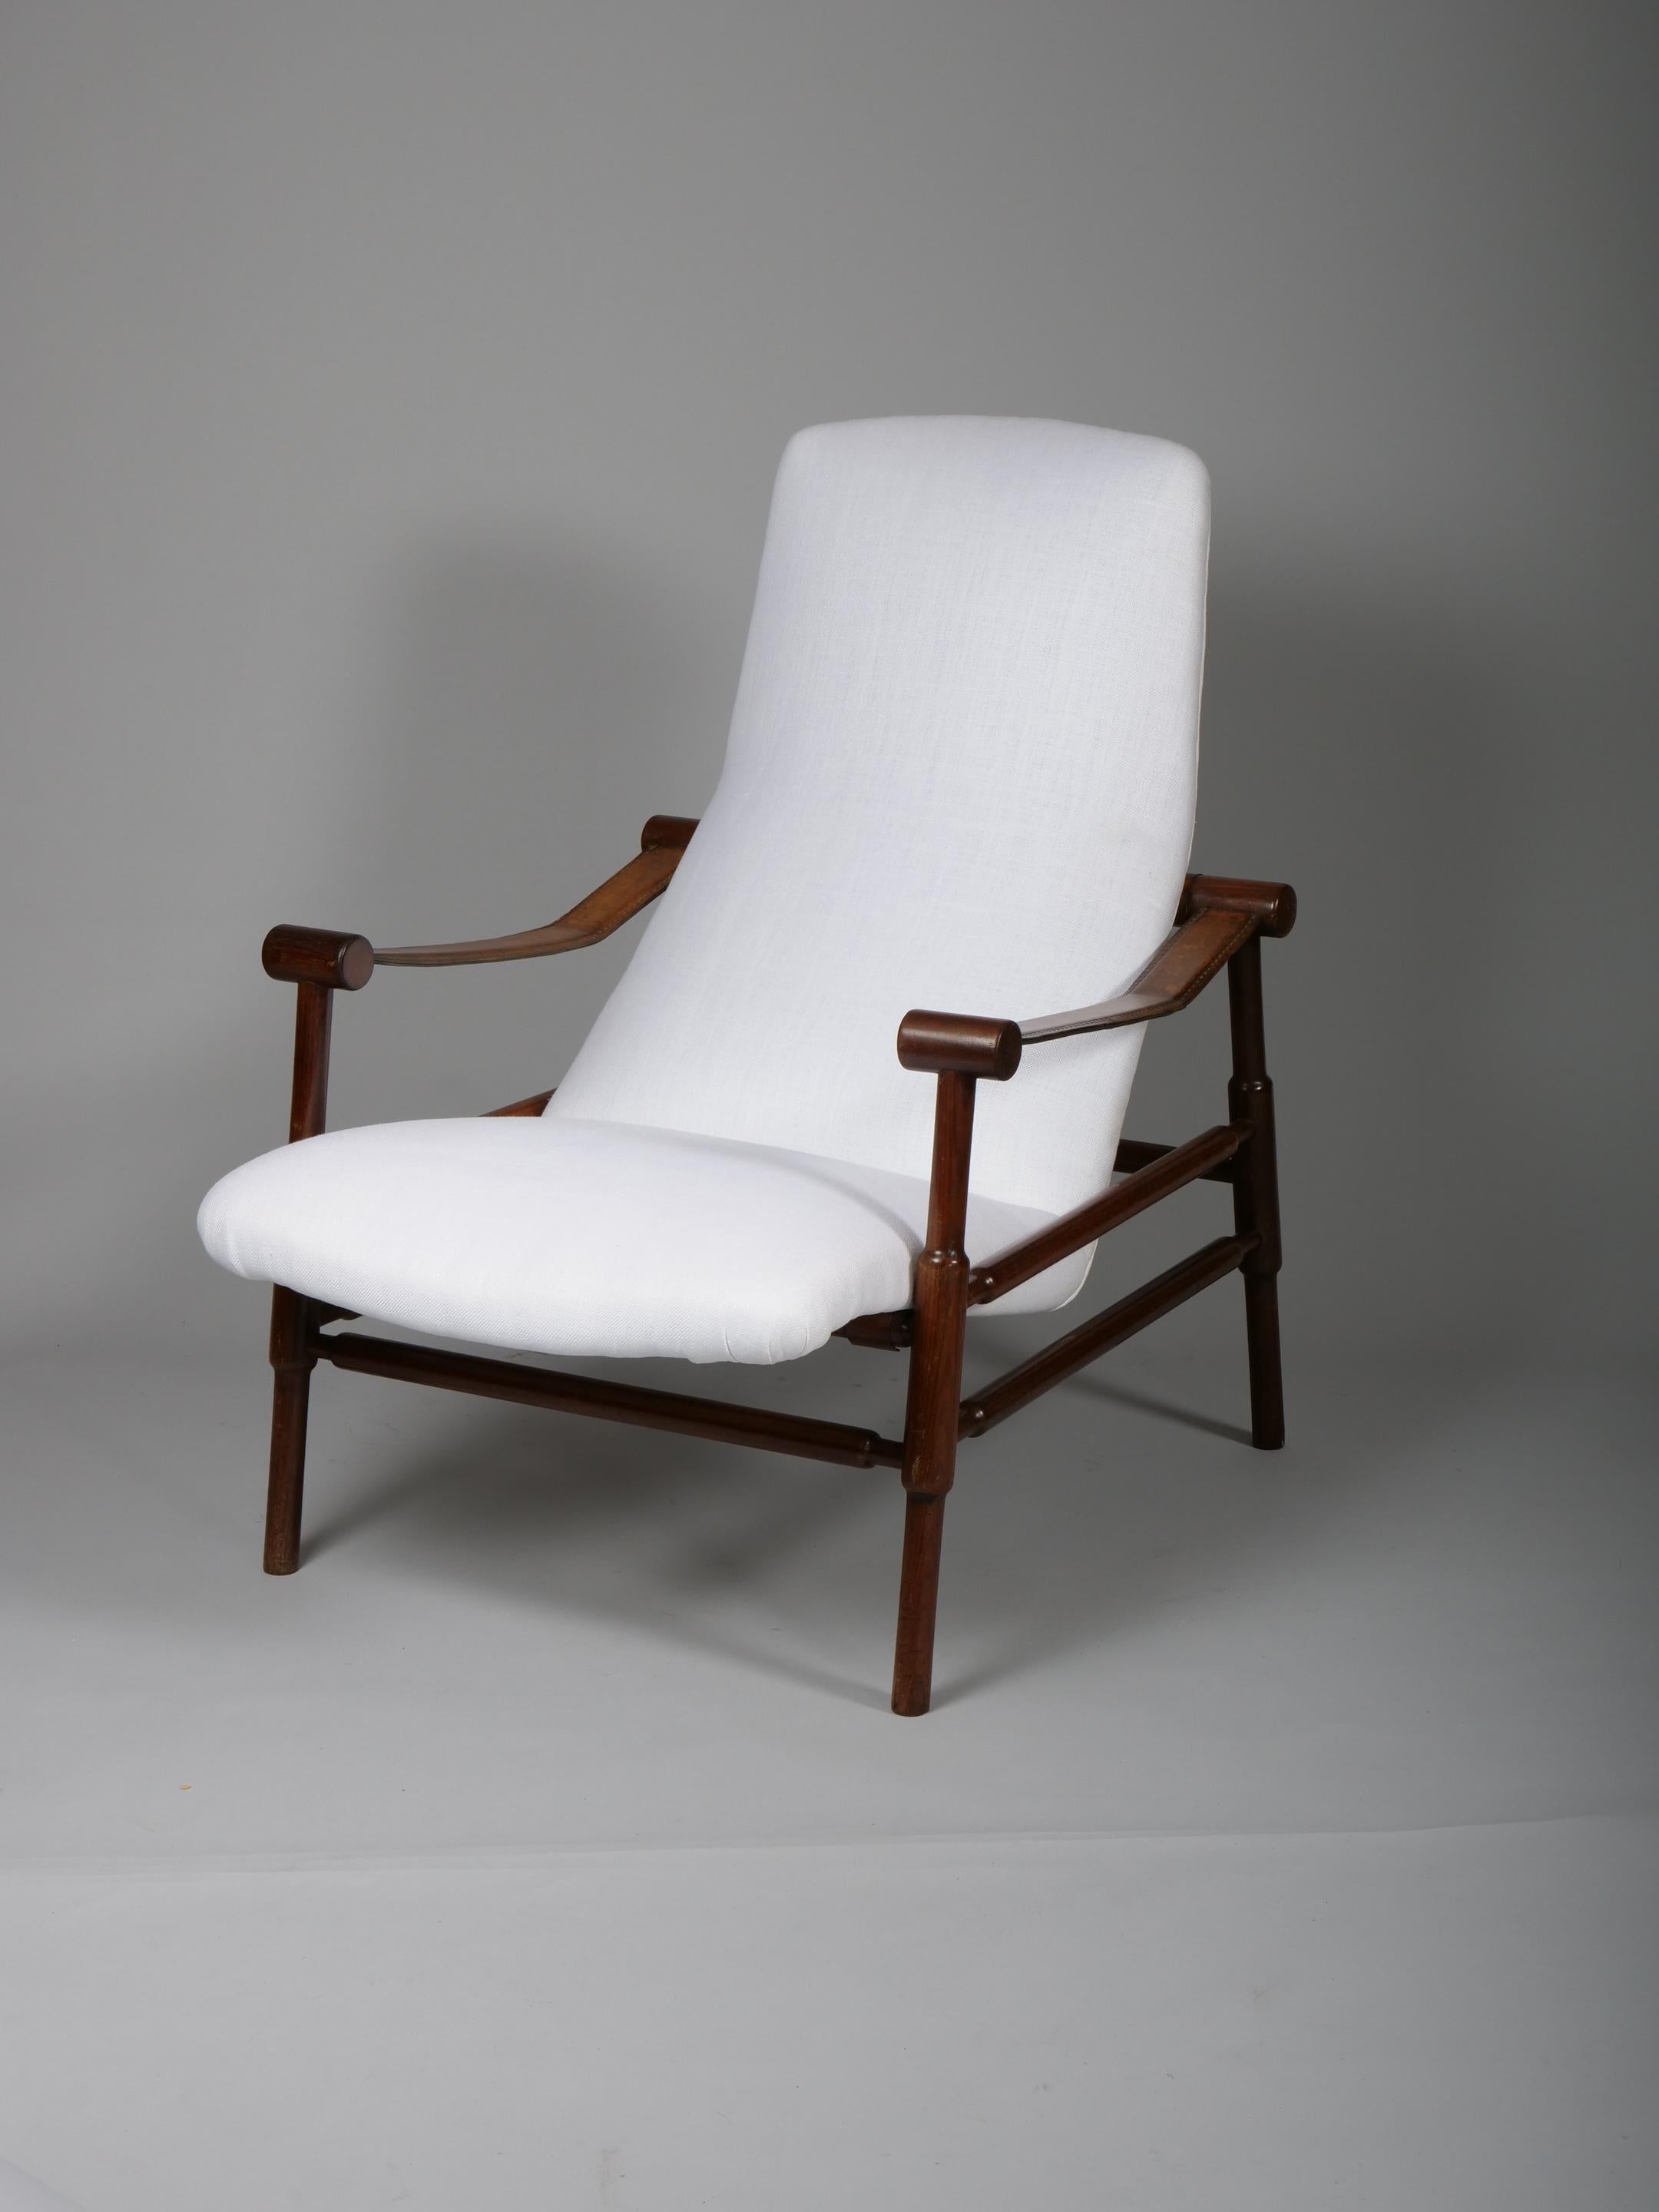 Schöner Sessel.  

Leder, Nussbaumholz und Polsterung aus cremefarbenem Leinenstoff

